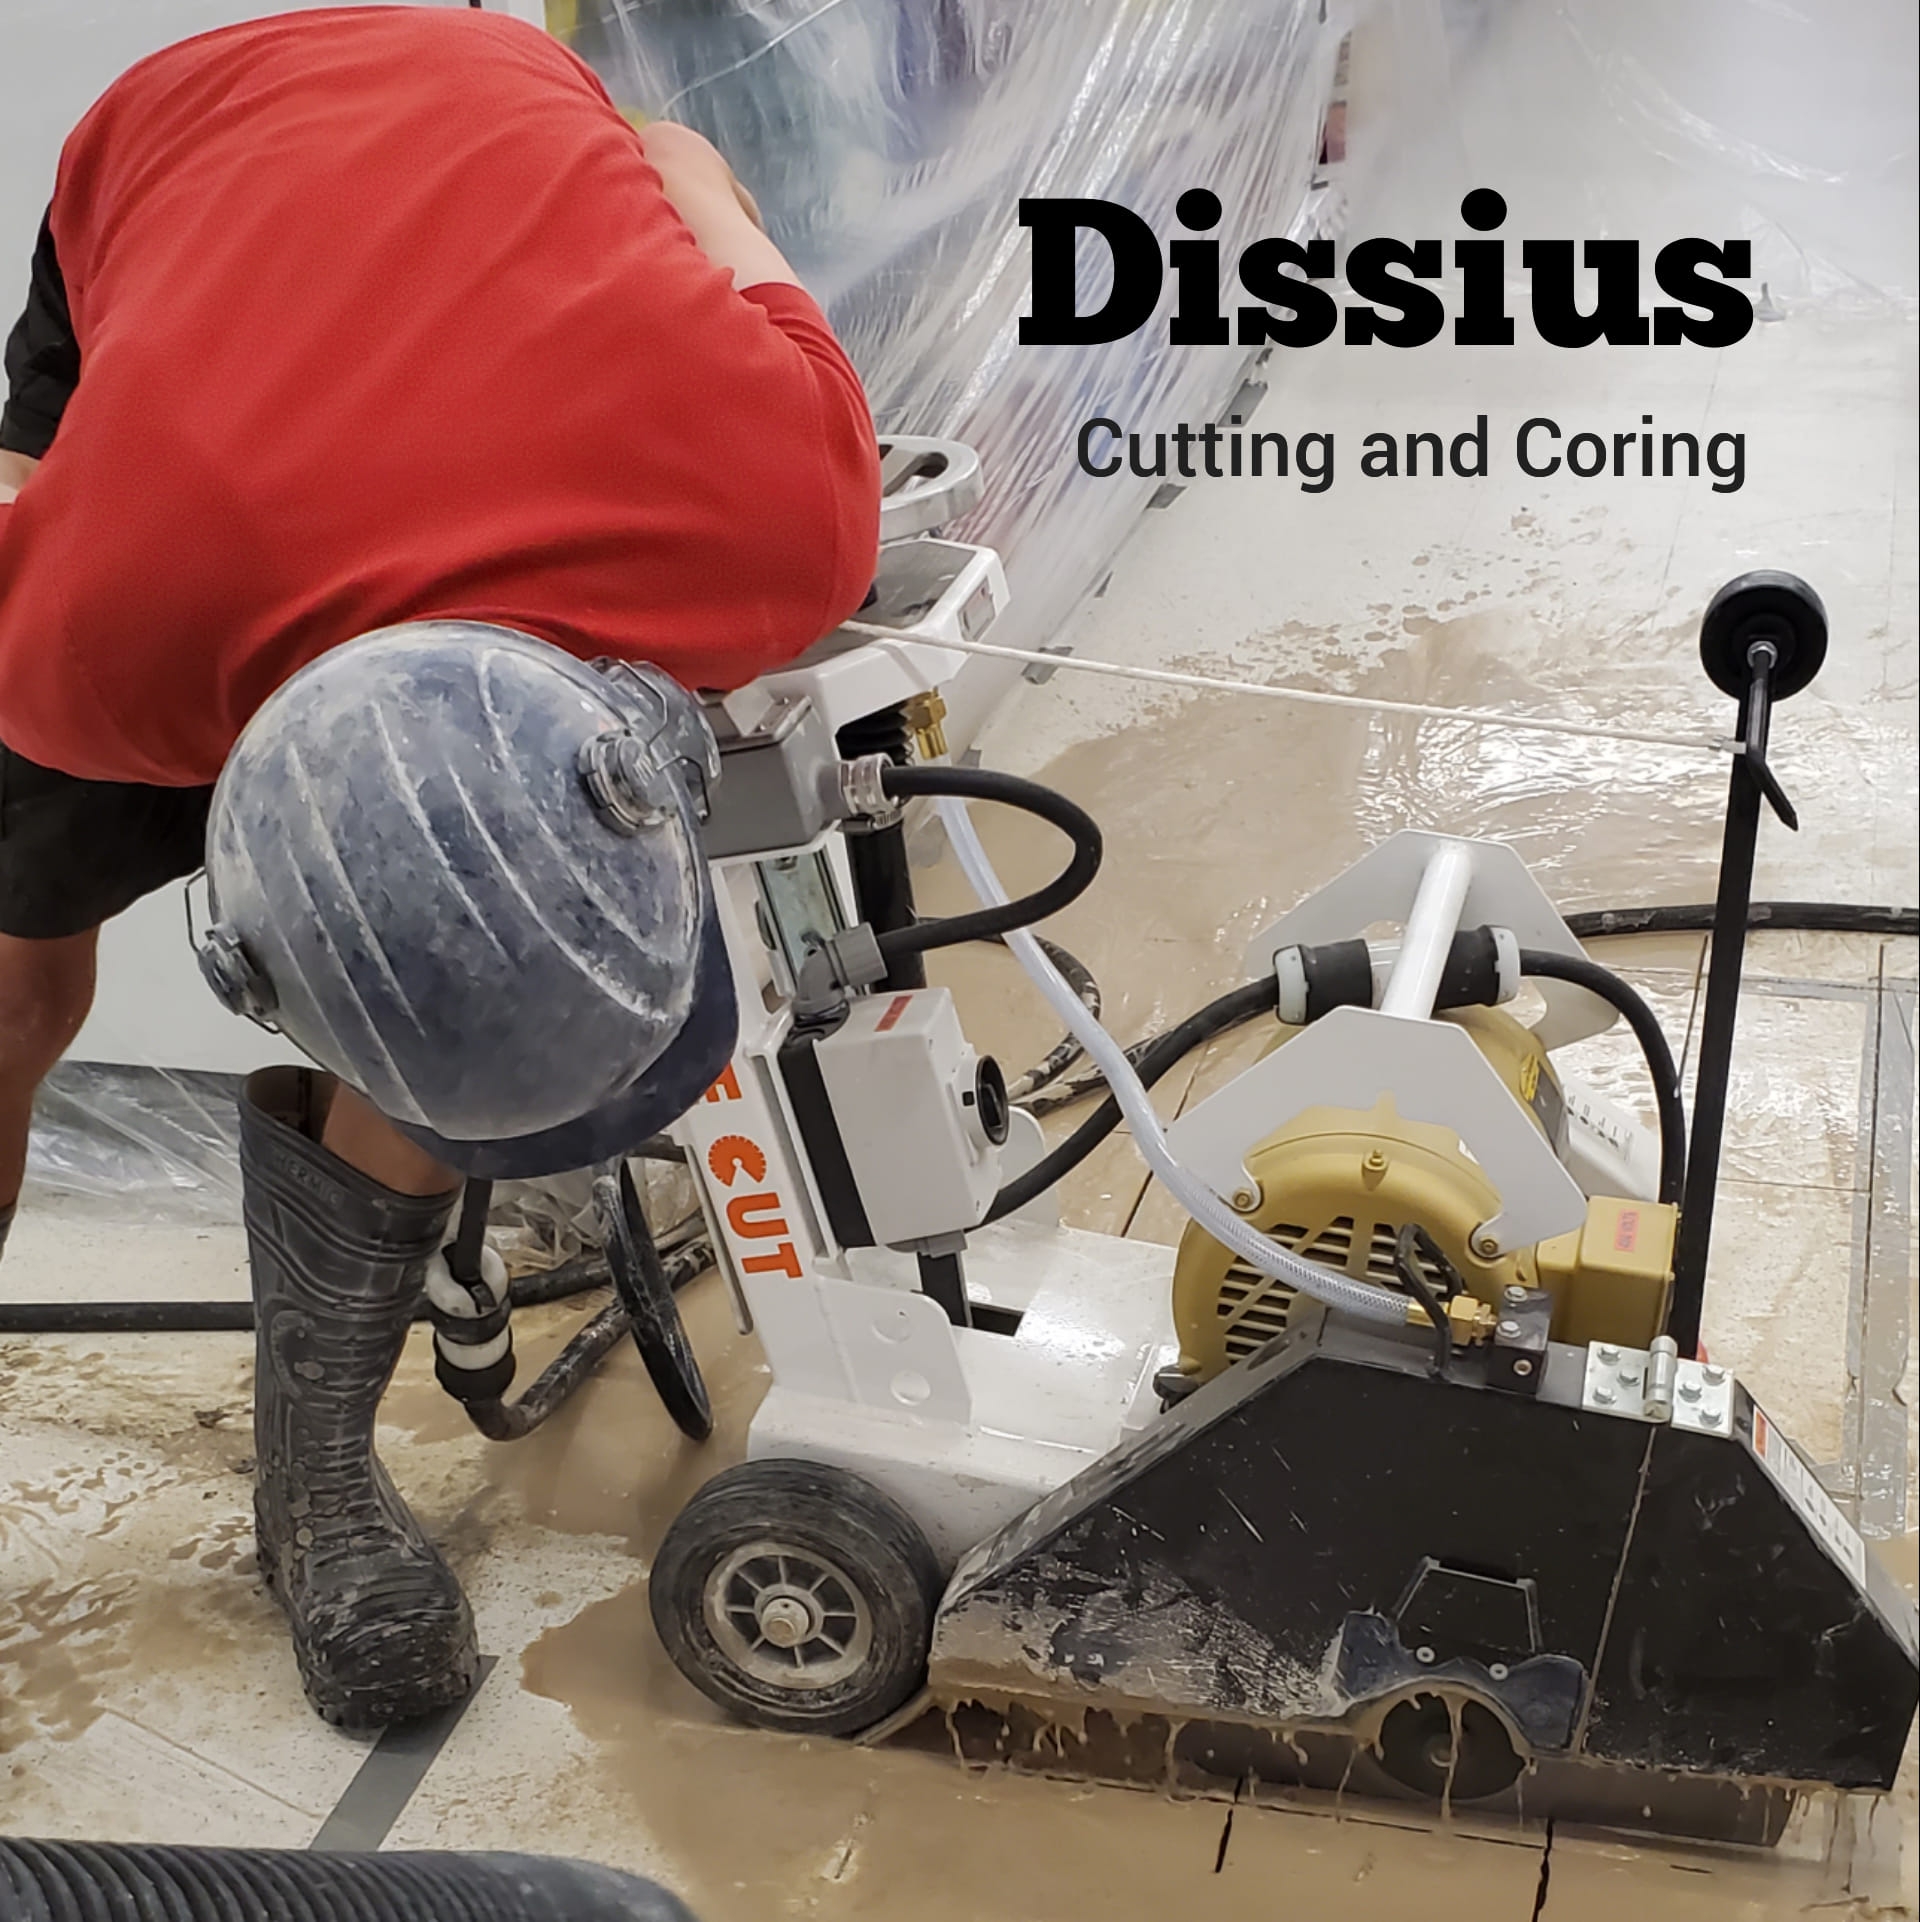 Dissius cutting & coring - Robbie